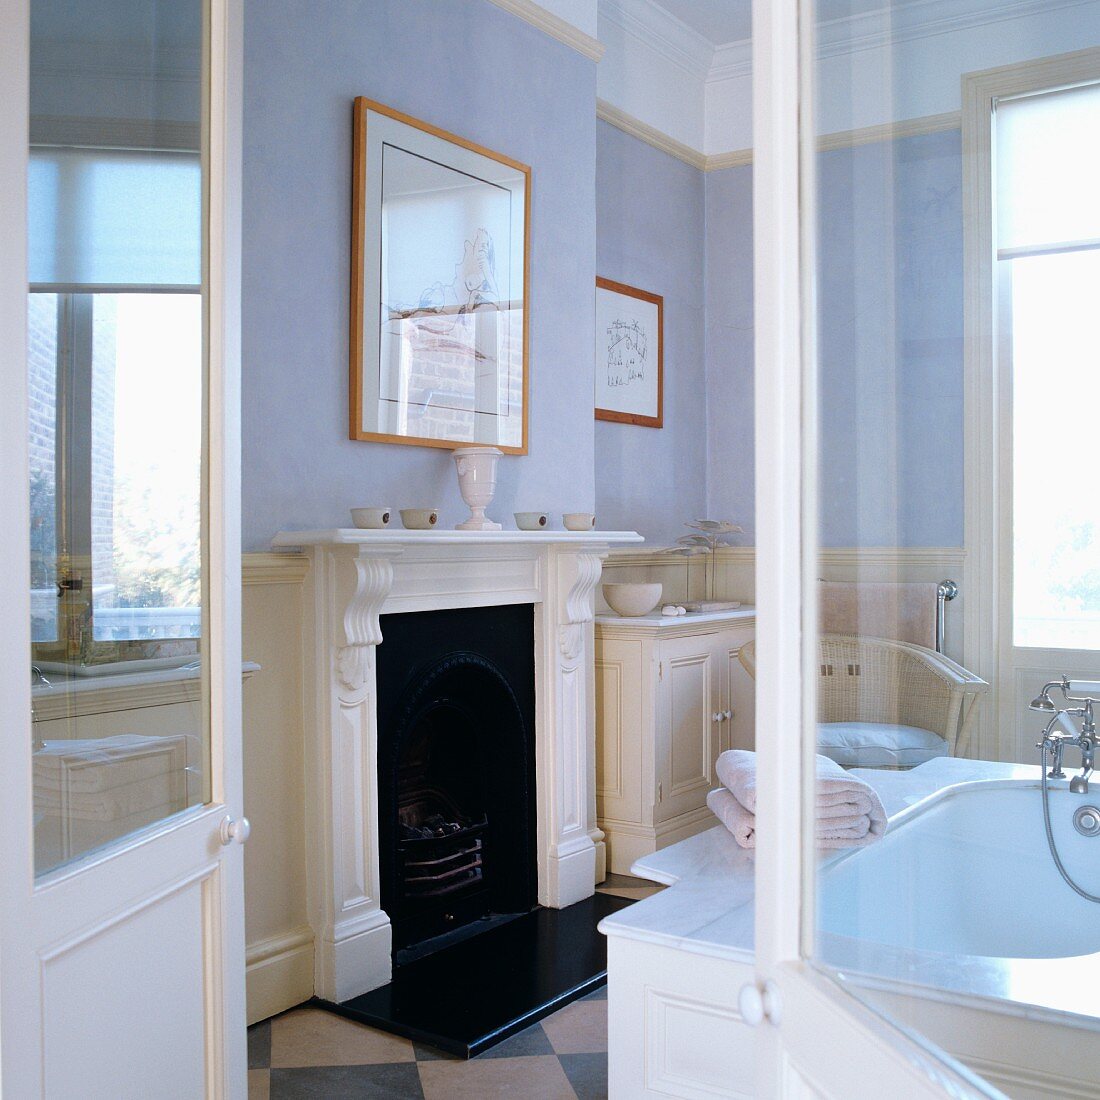 Blick durch offene Flügeltür auf Kamin mit weisser, profilierter Holzschürze in traditionellem Bad mit pastellfarben getönten Wänden